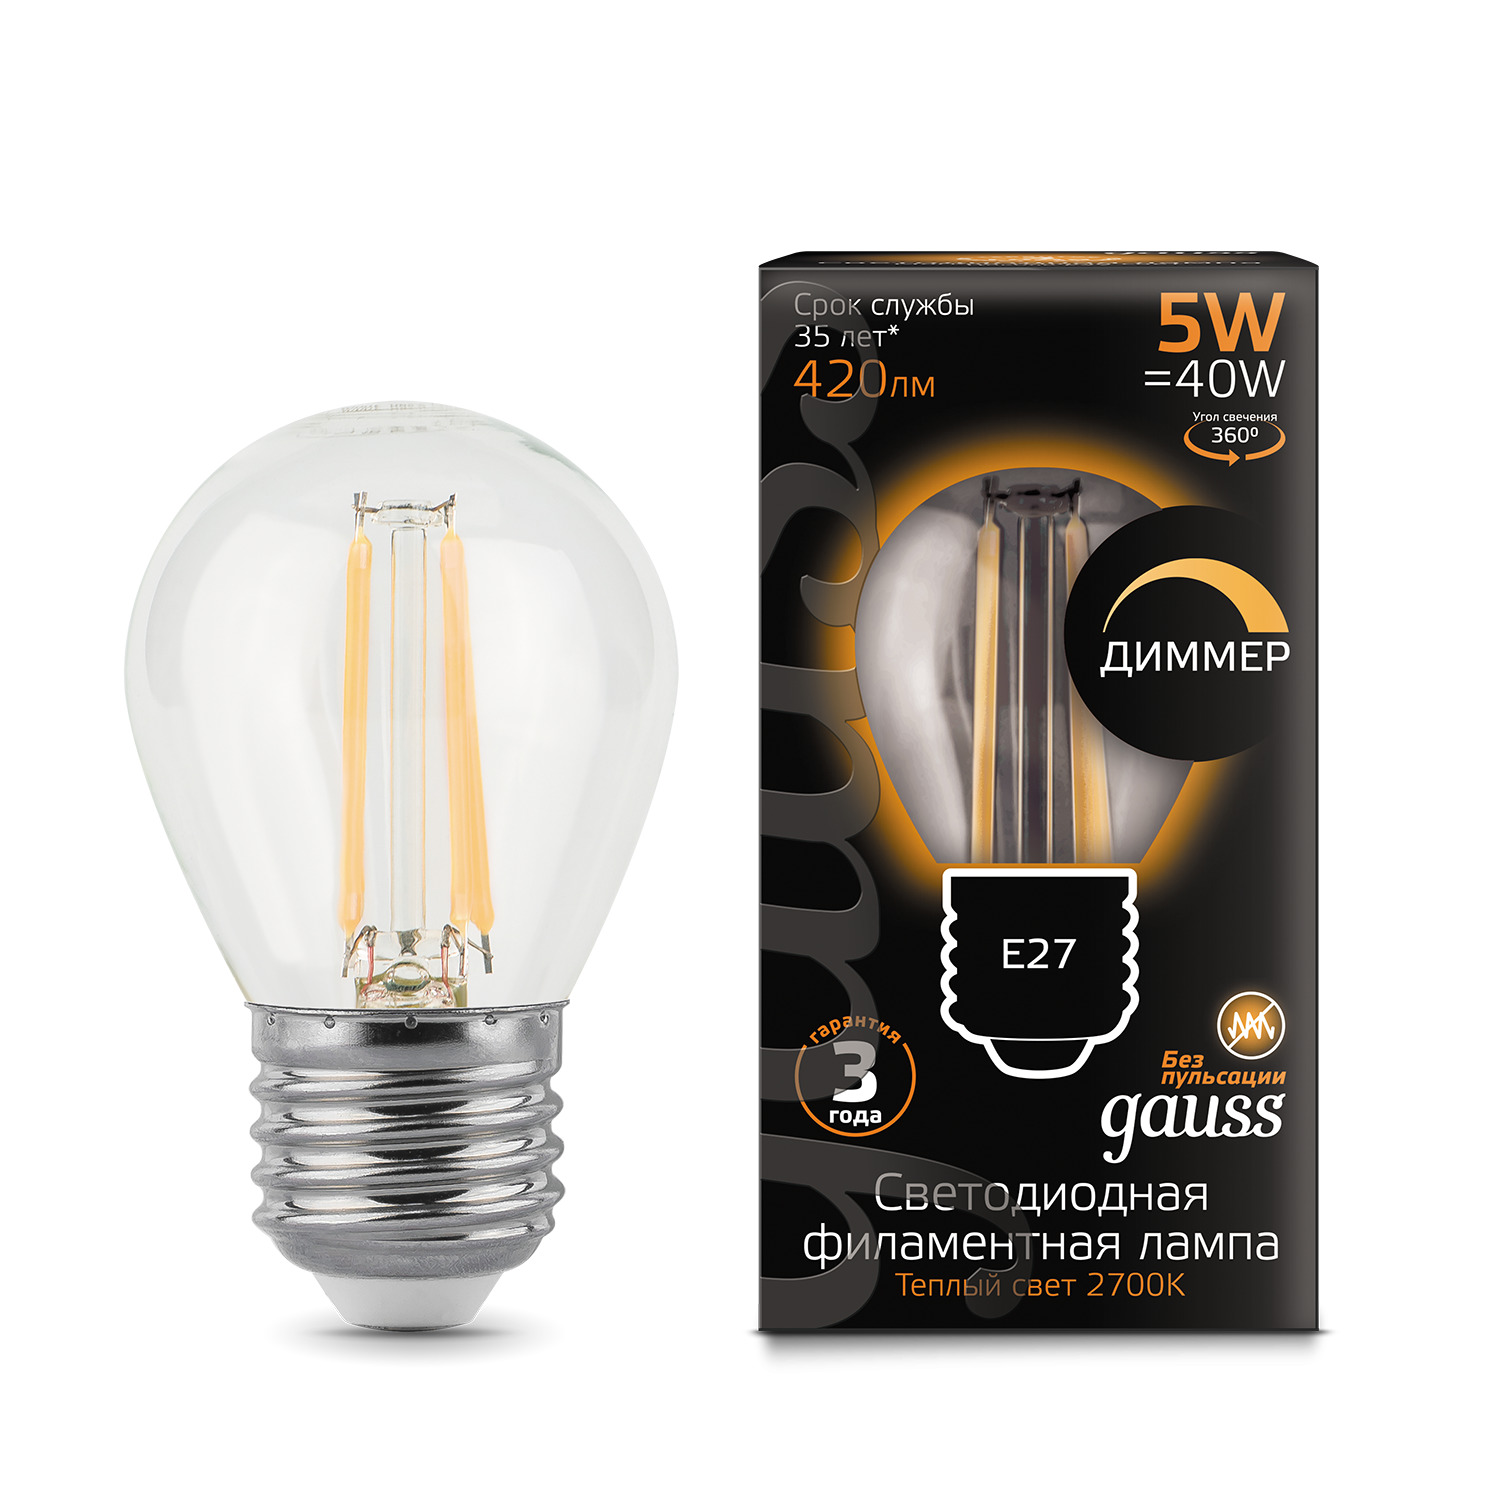 лампа gauss led filament свеча на ветру dimmable e14 5w 420lm 2700k 1 10 50 Лампа Gauss LED Filament Шар dimmable E27 5W 420lm 2700K 1/10/50